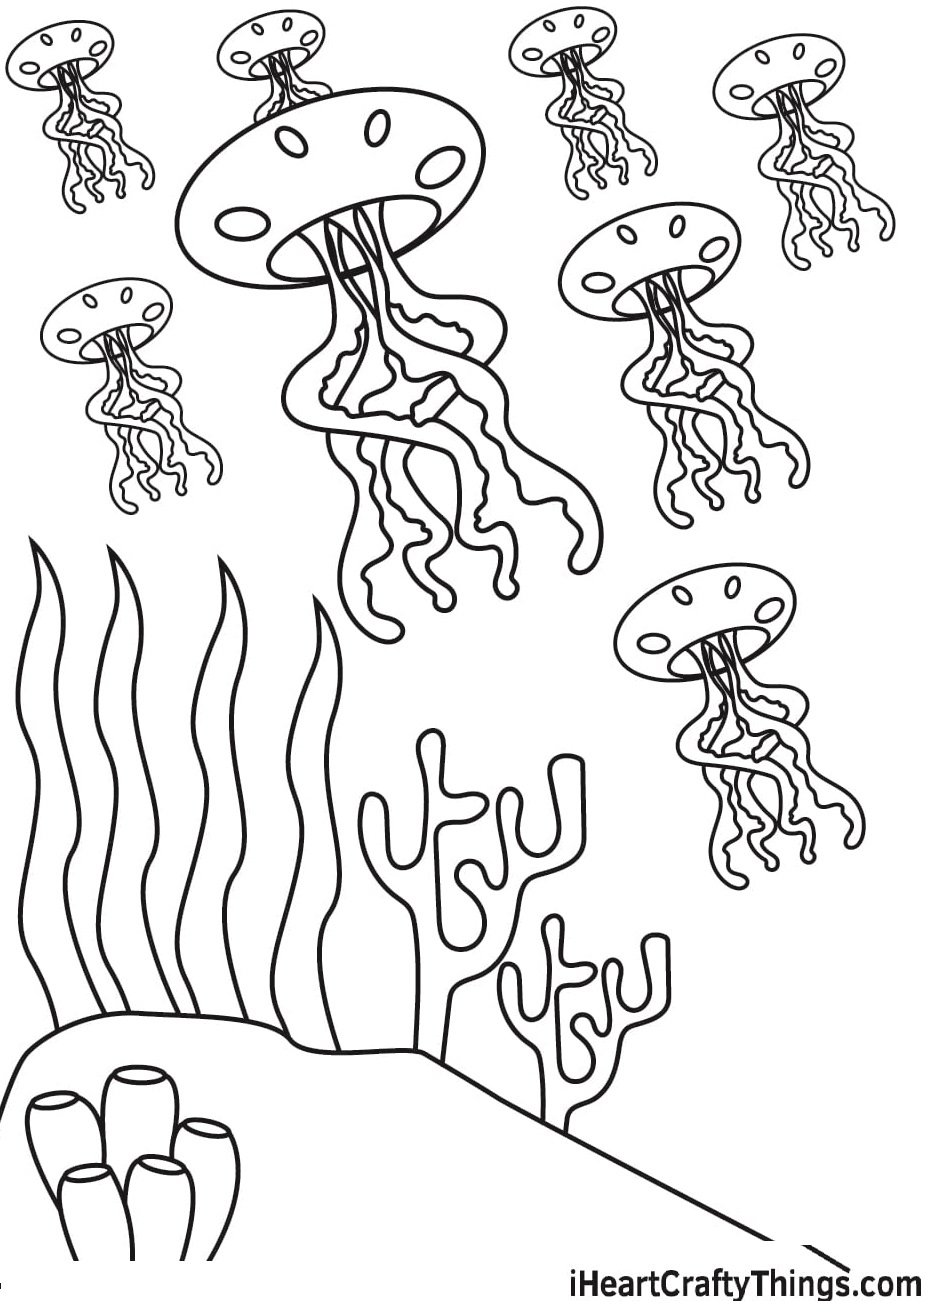 Box Jellyfish Image